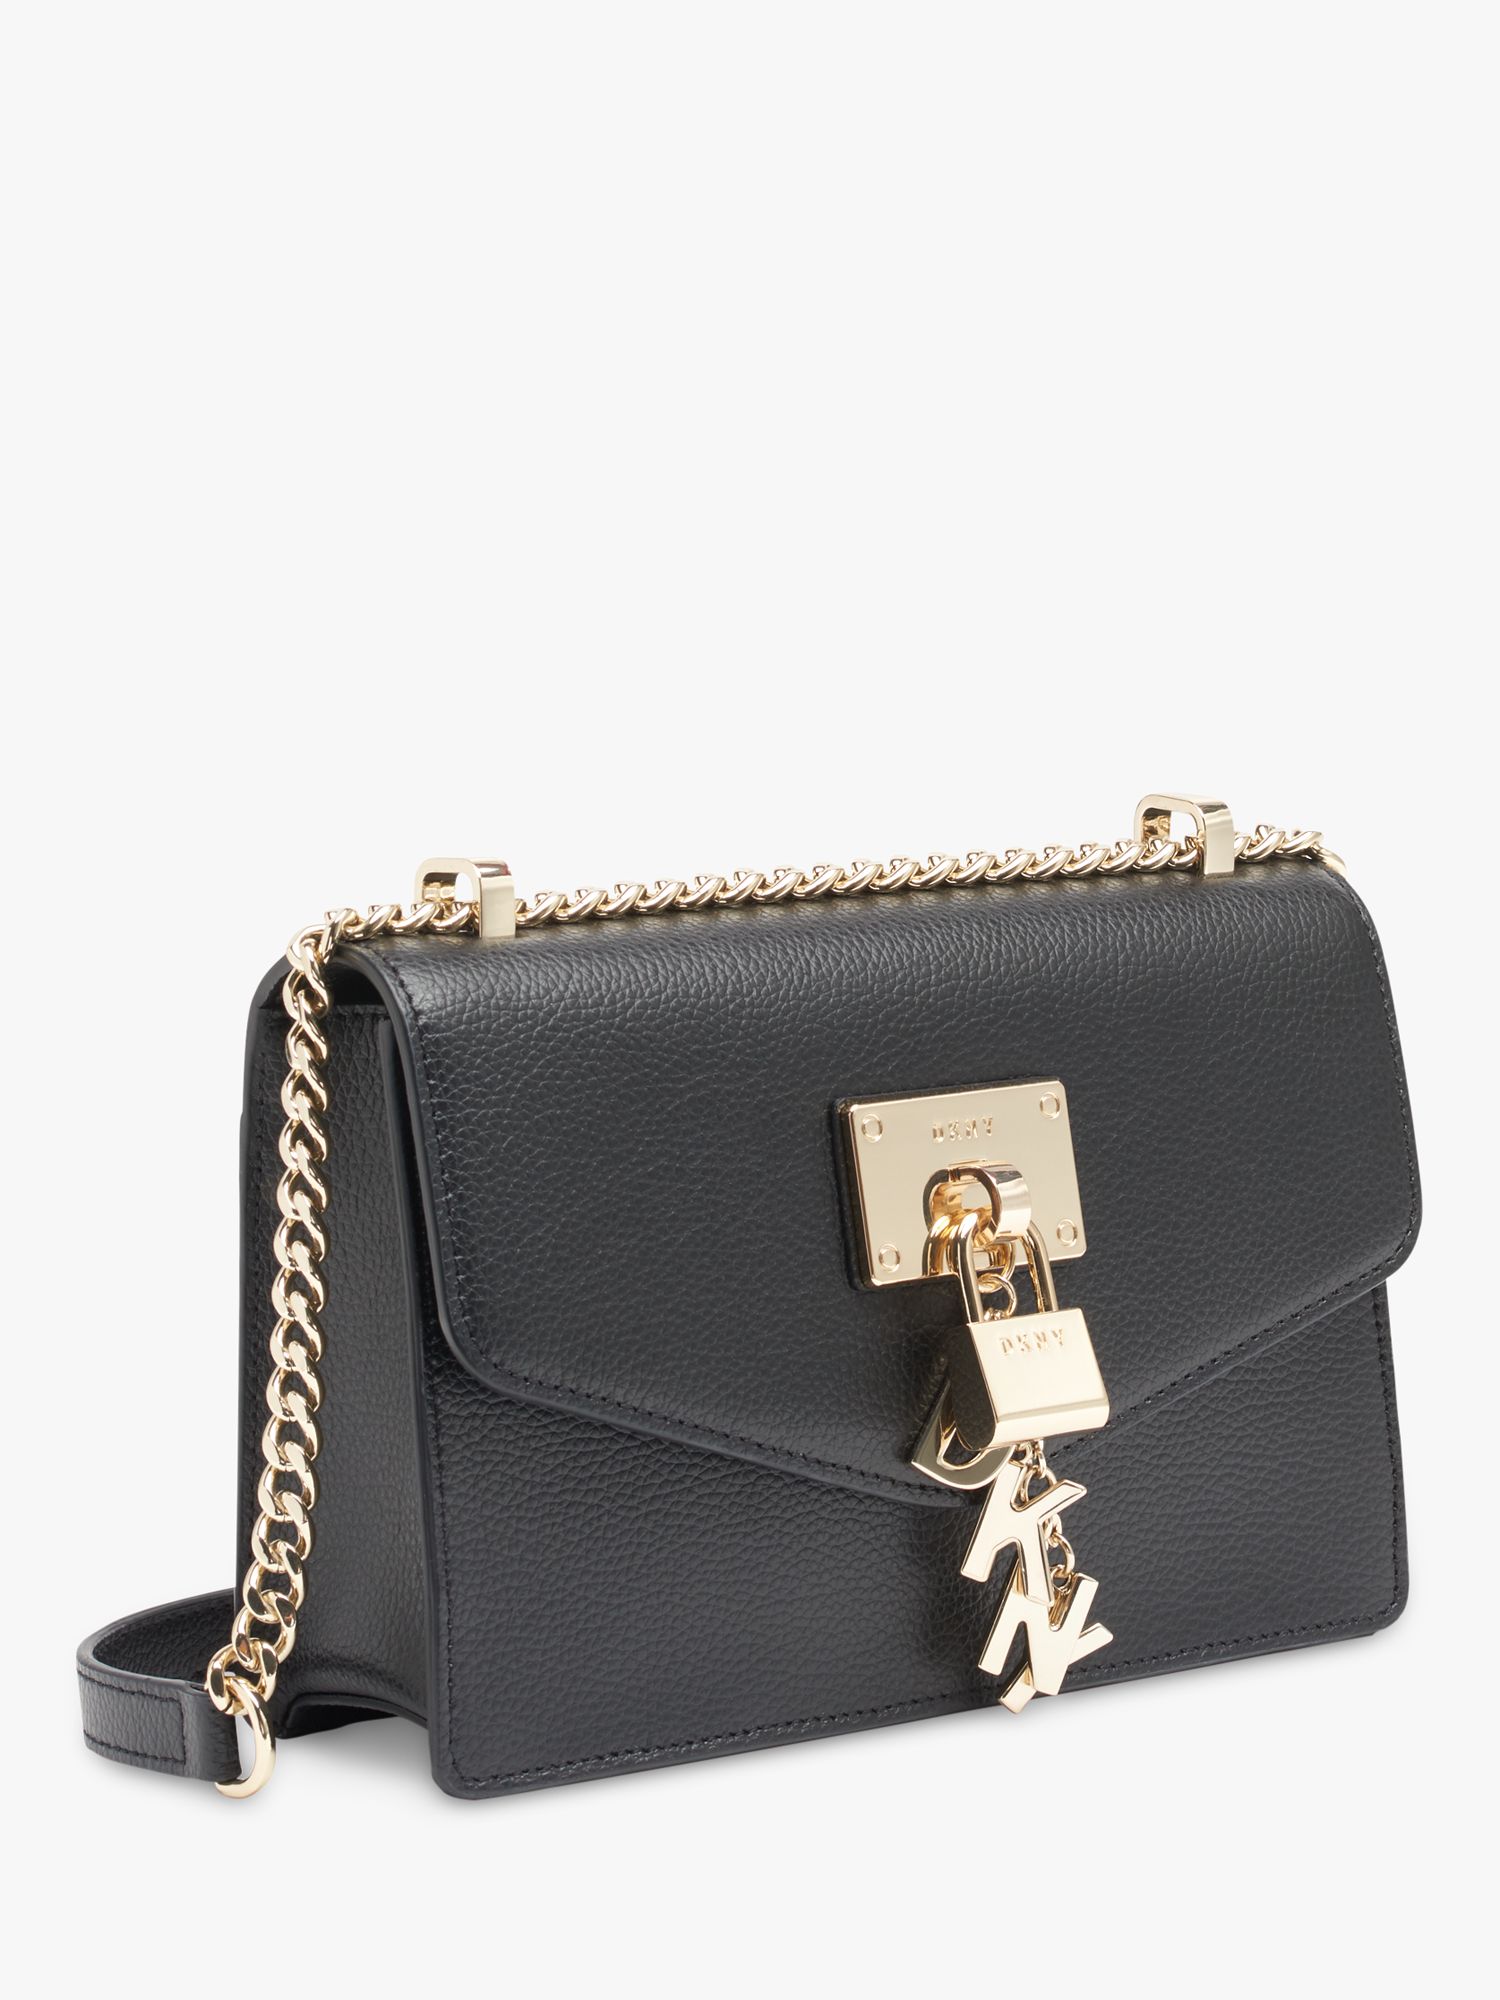 Dkny Elissa Leather Shoulder Bag In Black / Gold